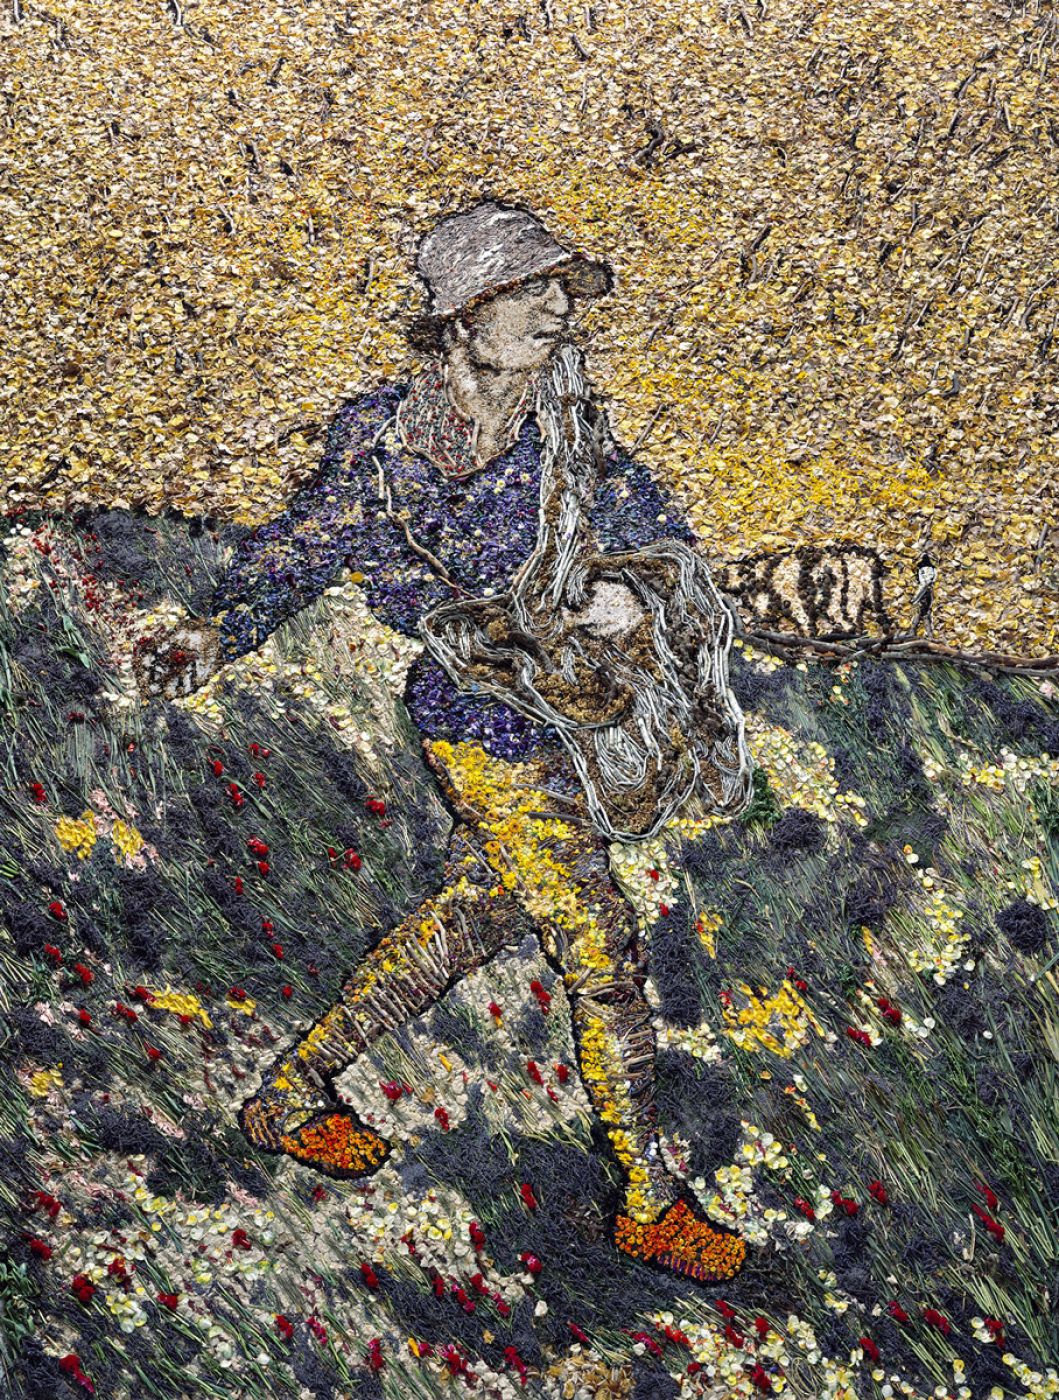 Vik Muniz, “The sower, after Van Gogh”, 2011